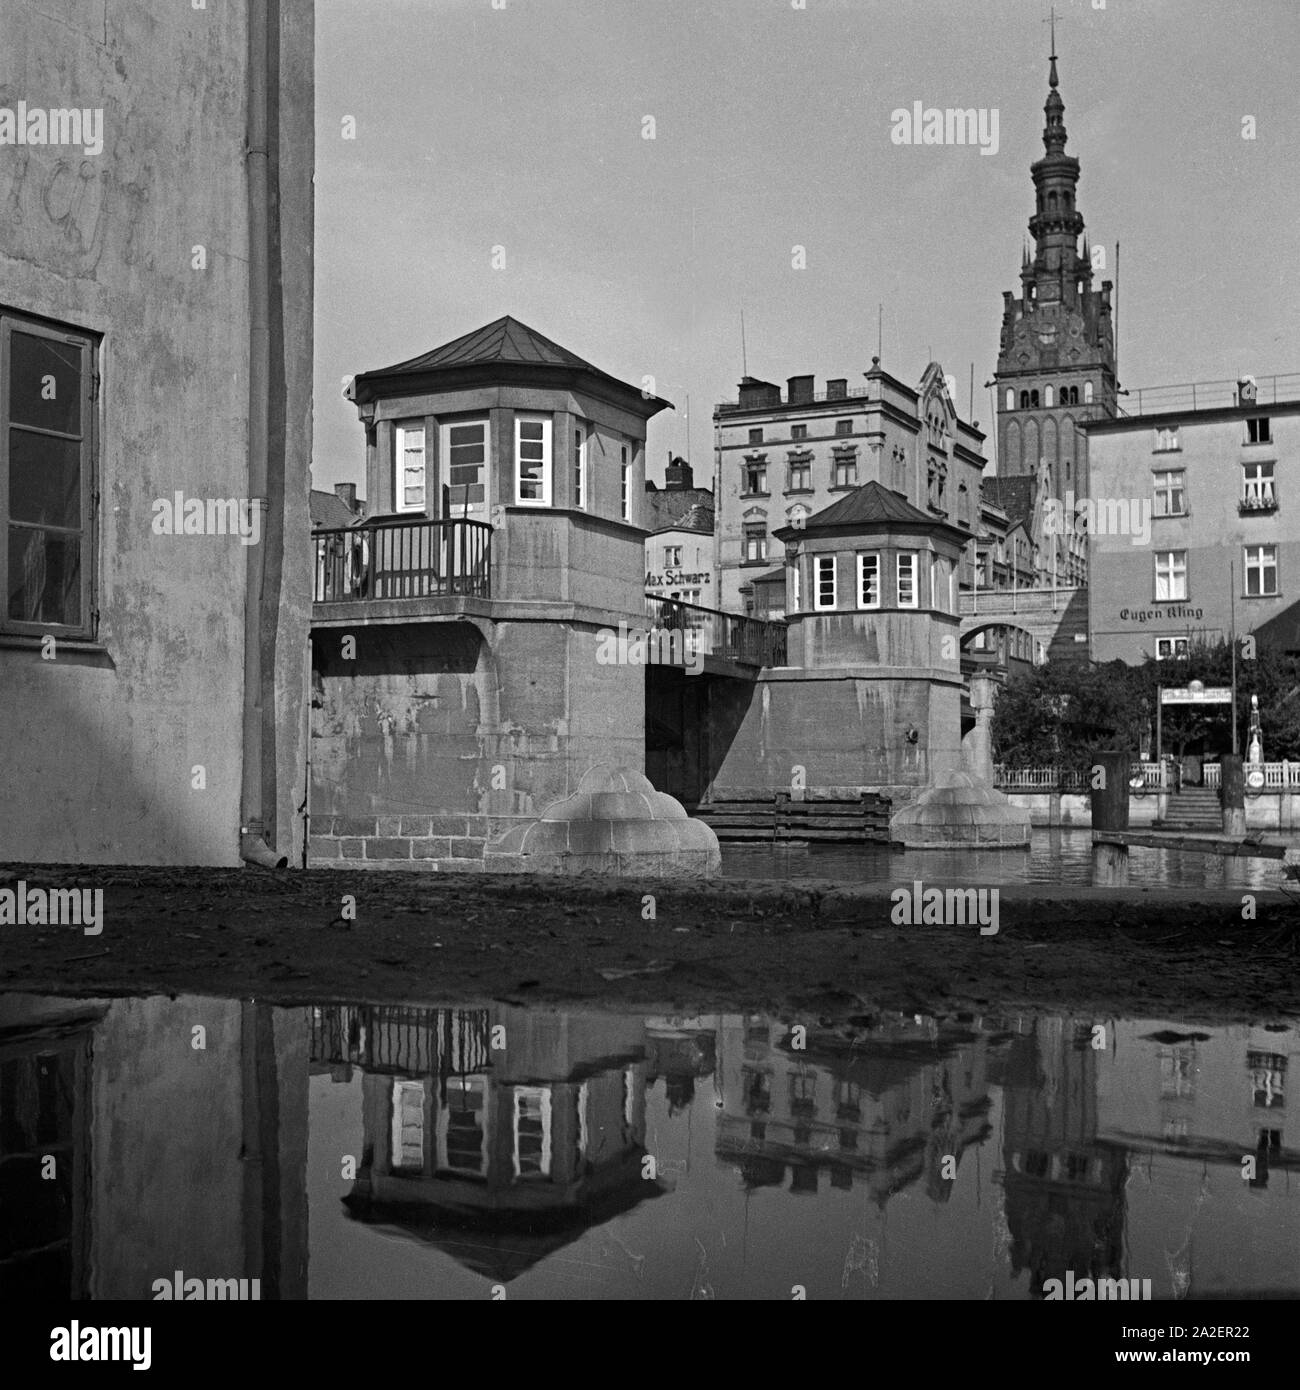 Die Liegebrücke in der Altstadt von Elbing, Masuren, Ostpreußen, Deutschland 1930er Jahre, Liegebruecke ponte alla città vecchia di Elbing, la Masuria - Prussia orientale, Germania 1930s. Foto Stock